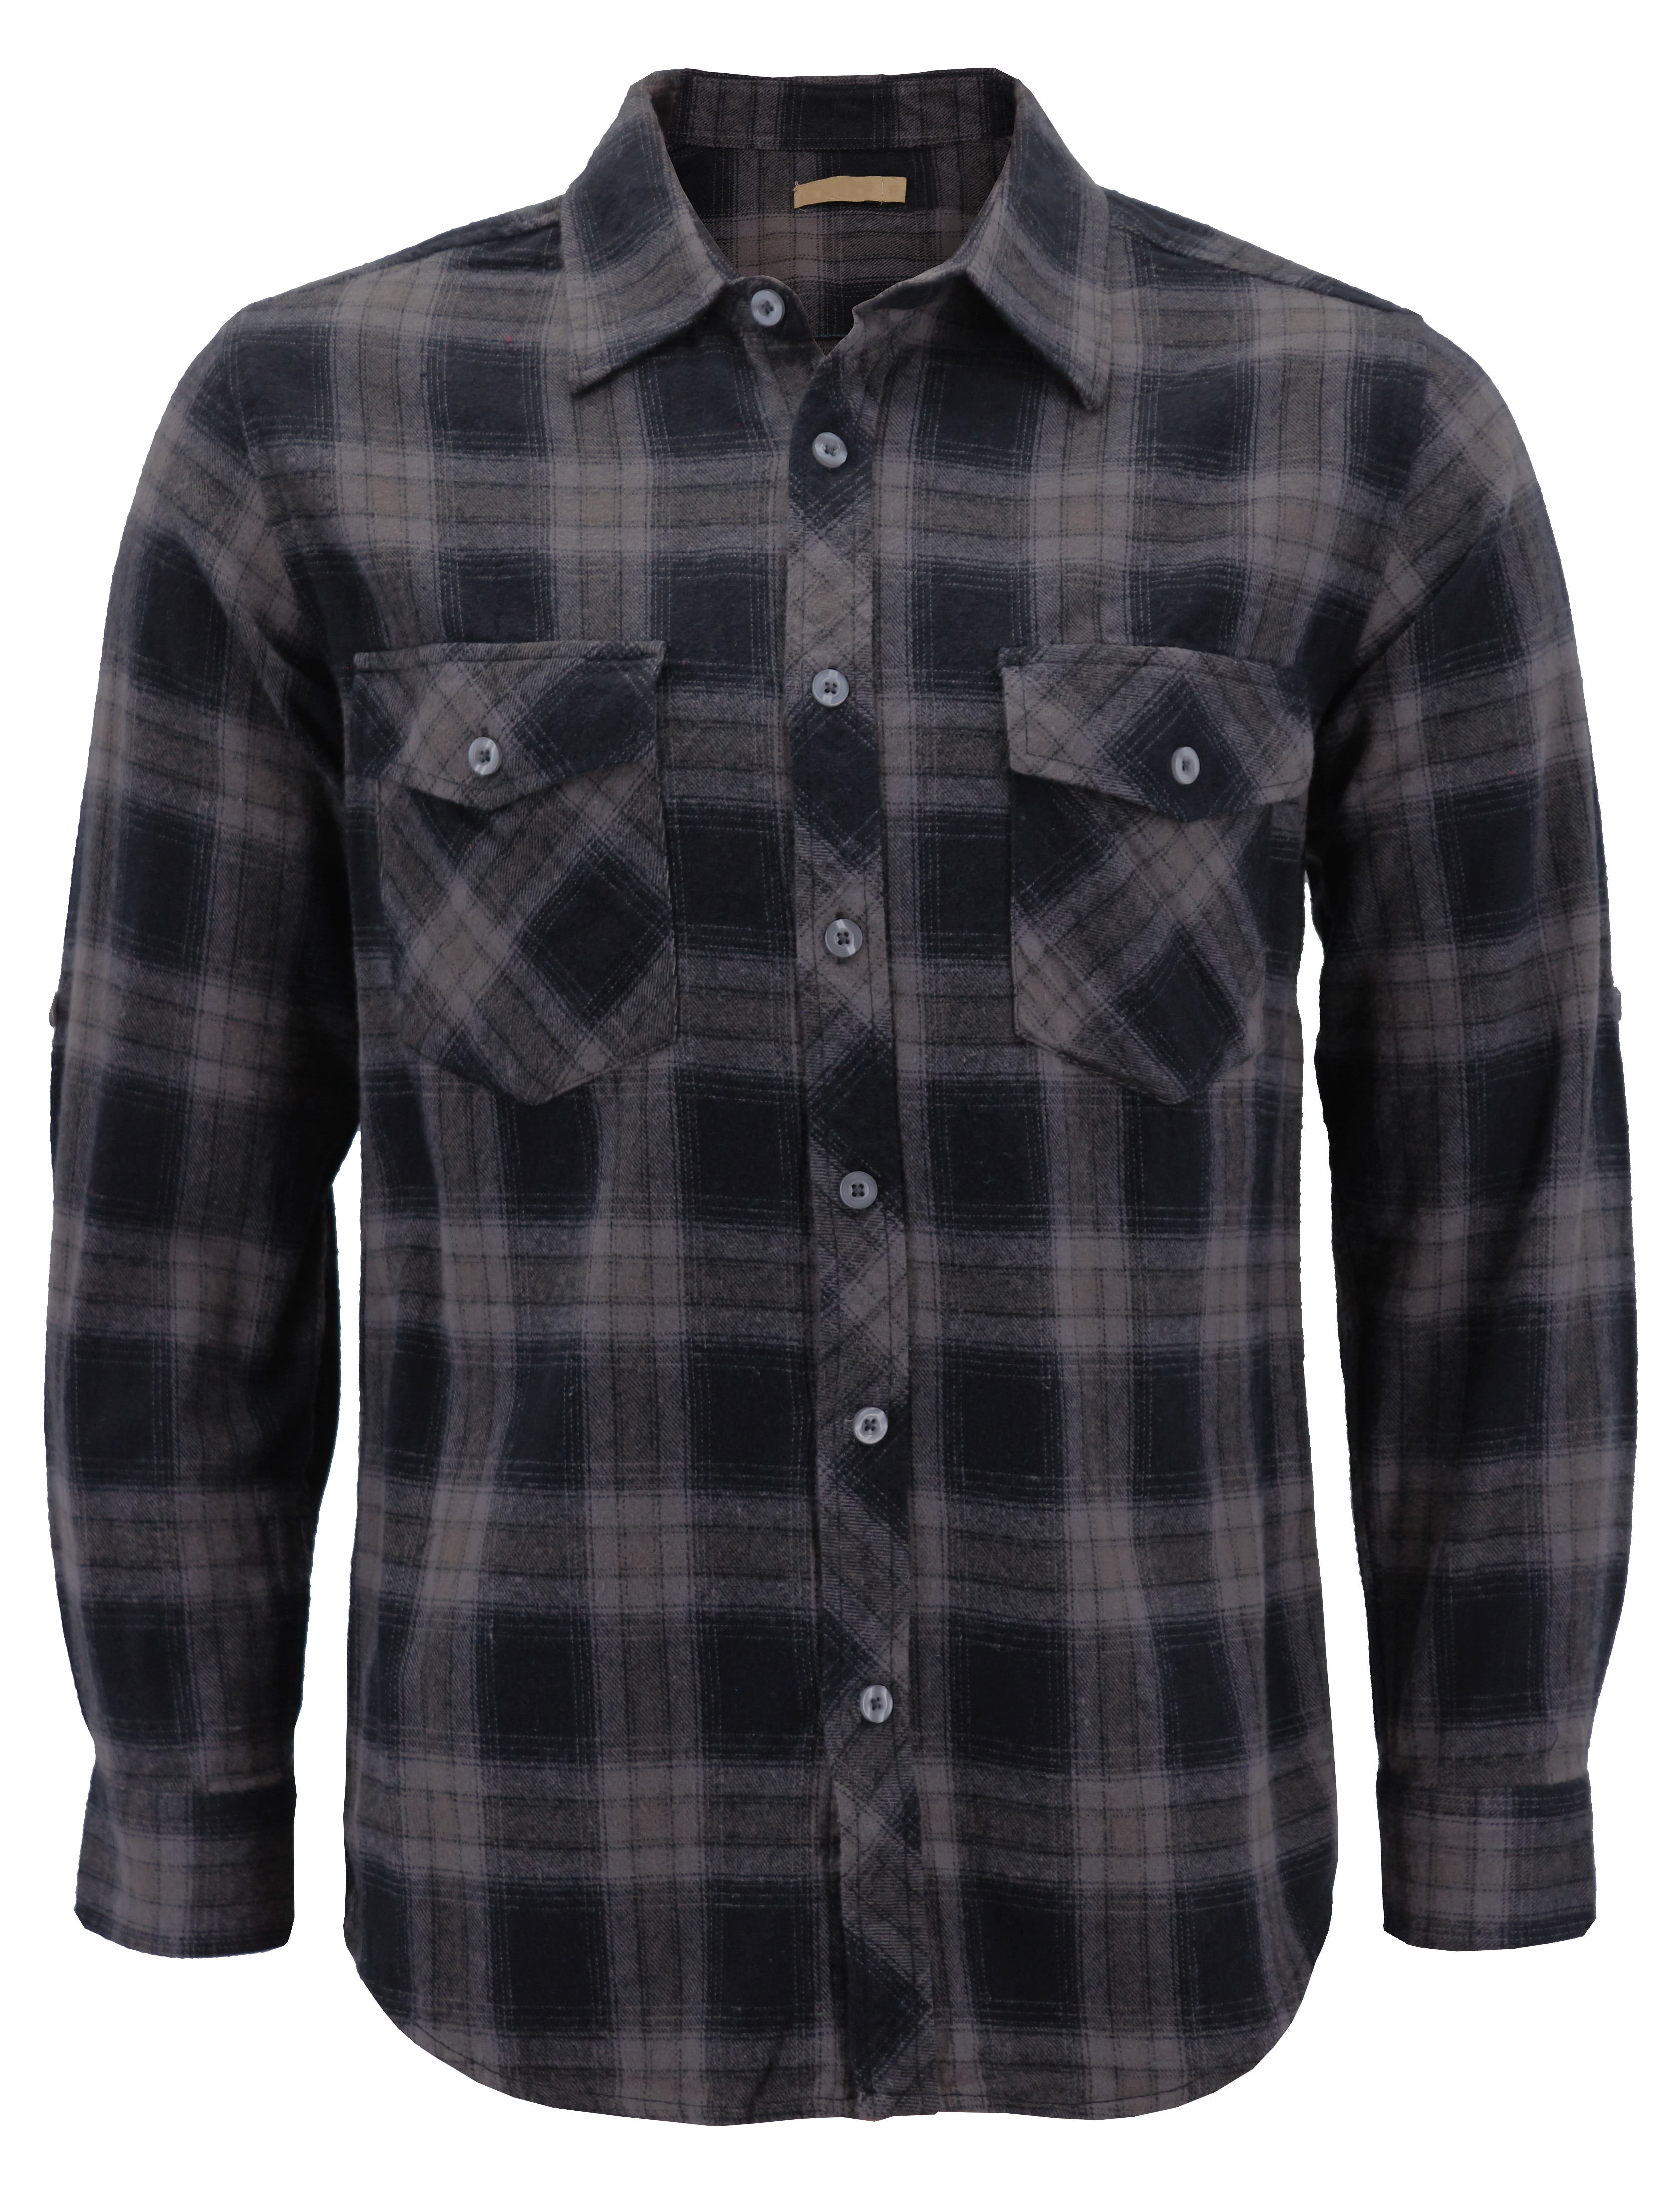 Men’s Premium Cotton Button Up Long Sleeve Plaid Comfortable Flannel